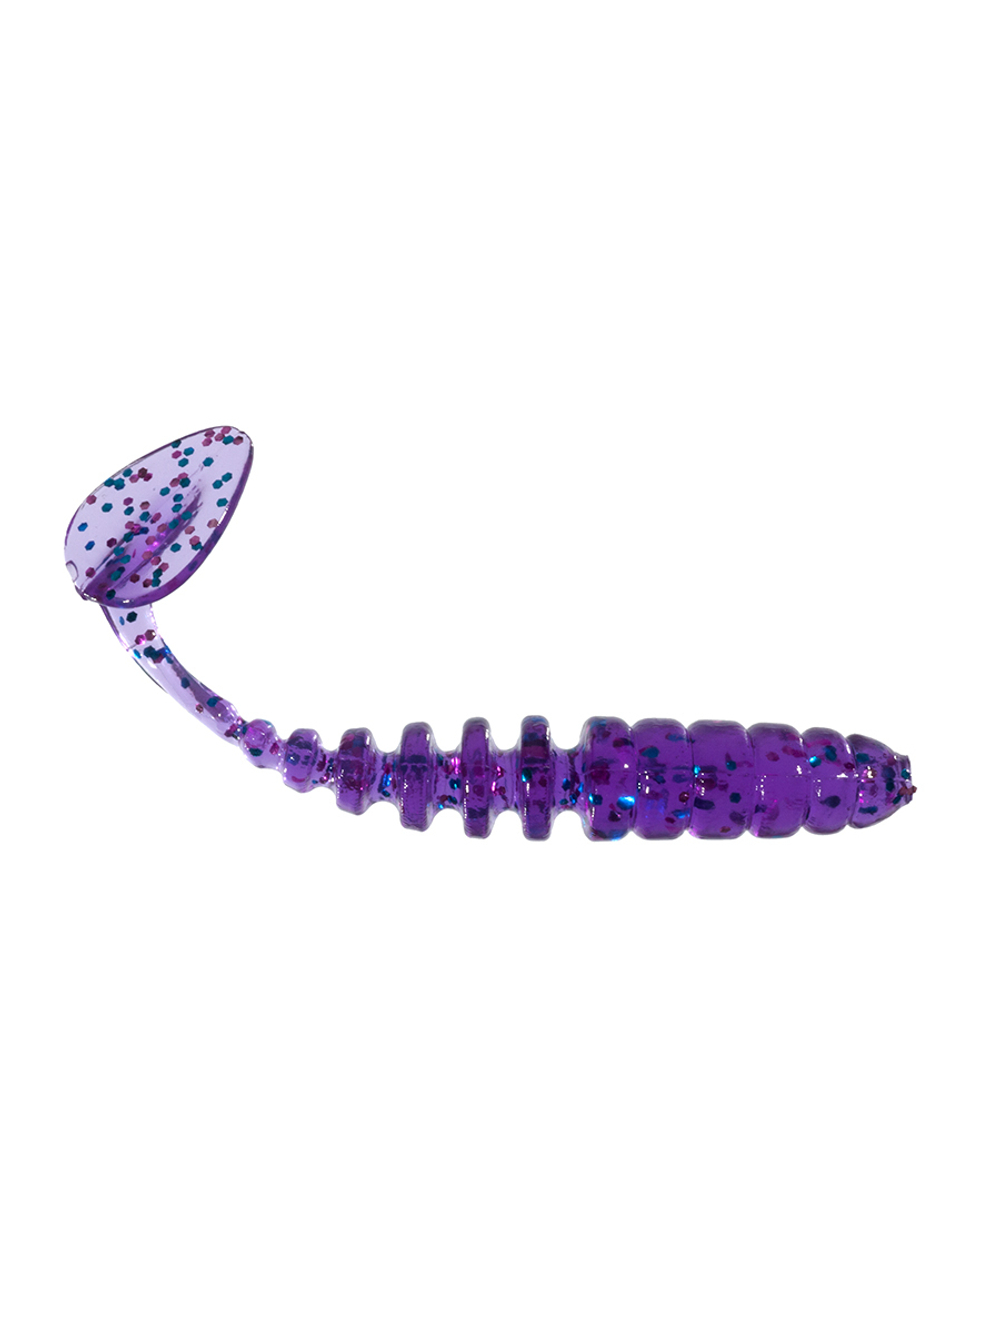 Приманка ZUB-SHAD 50мм-10шт, (цвет 610) фиолетовый с блестками